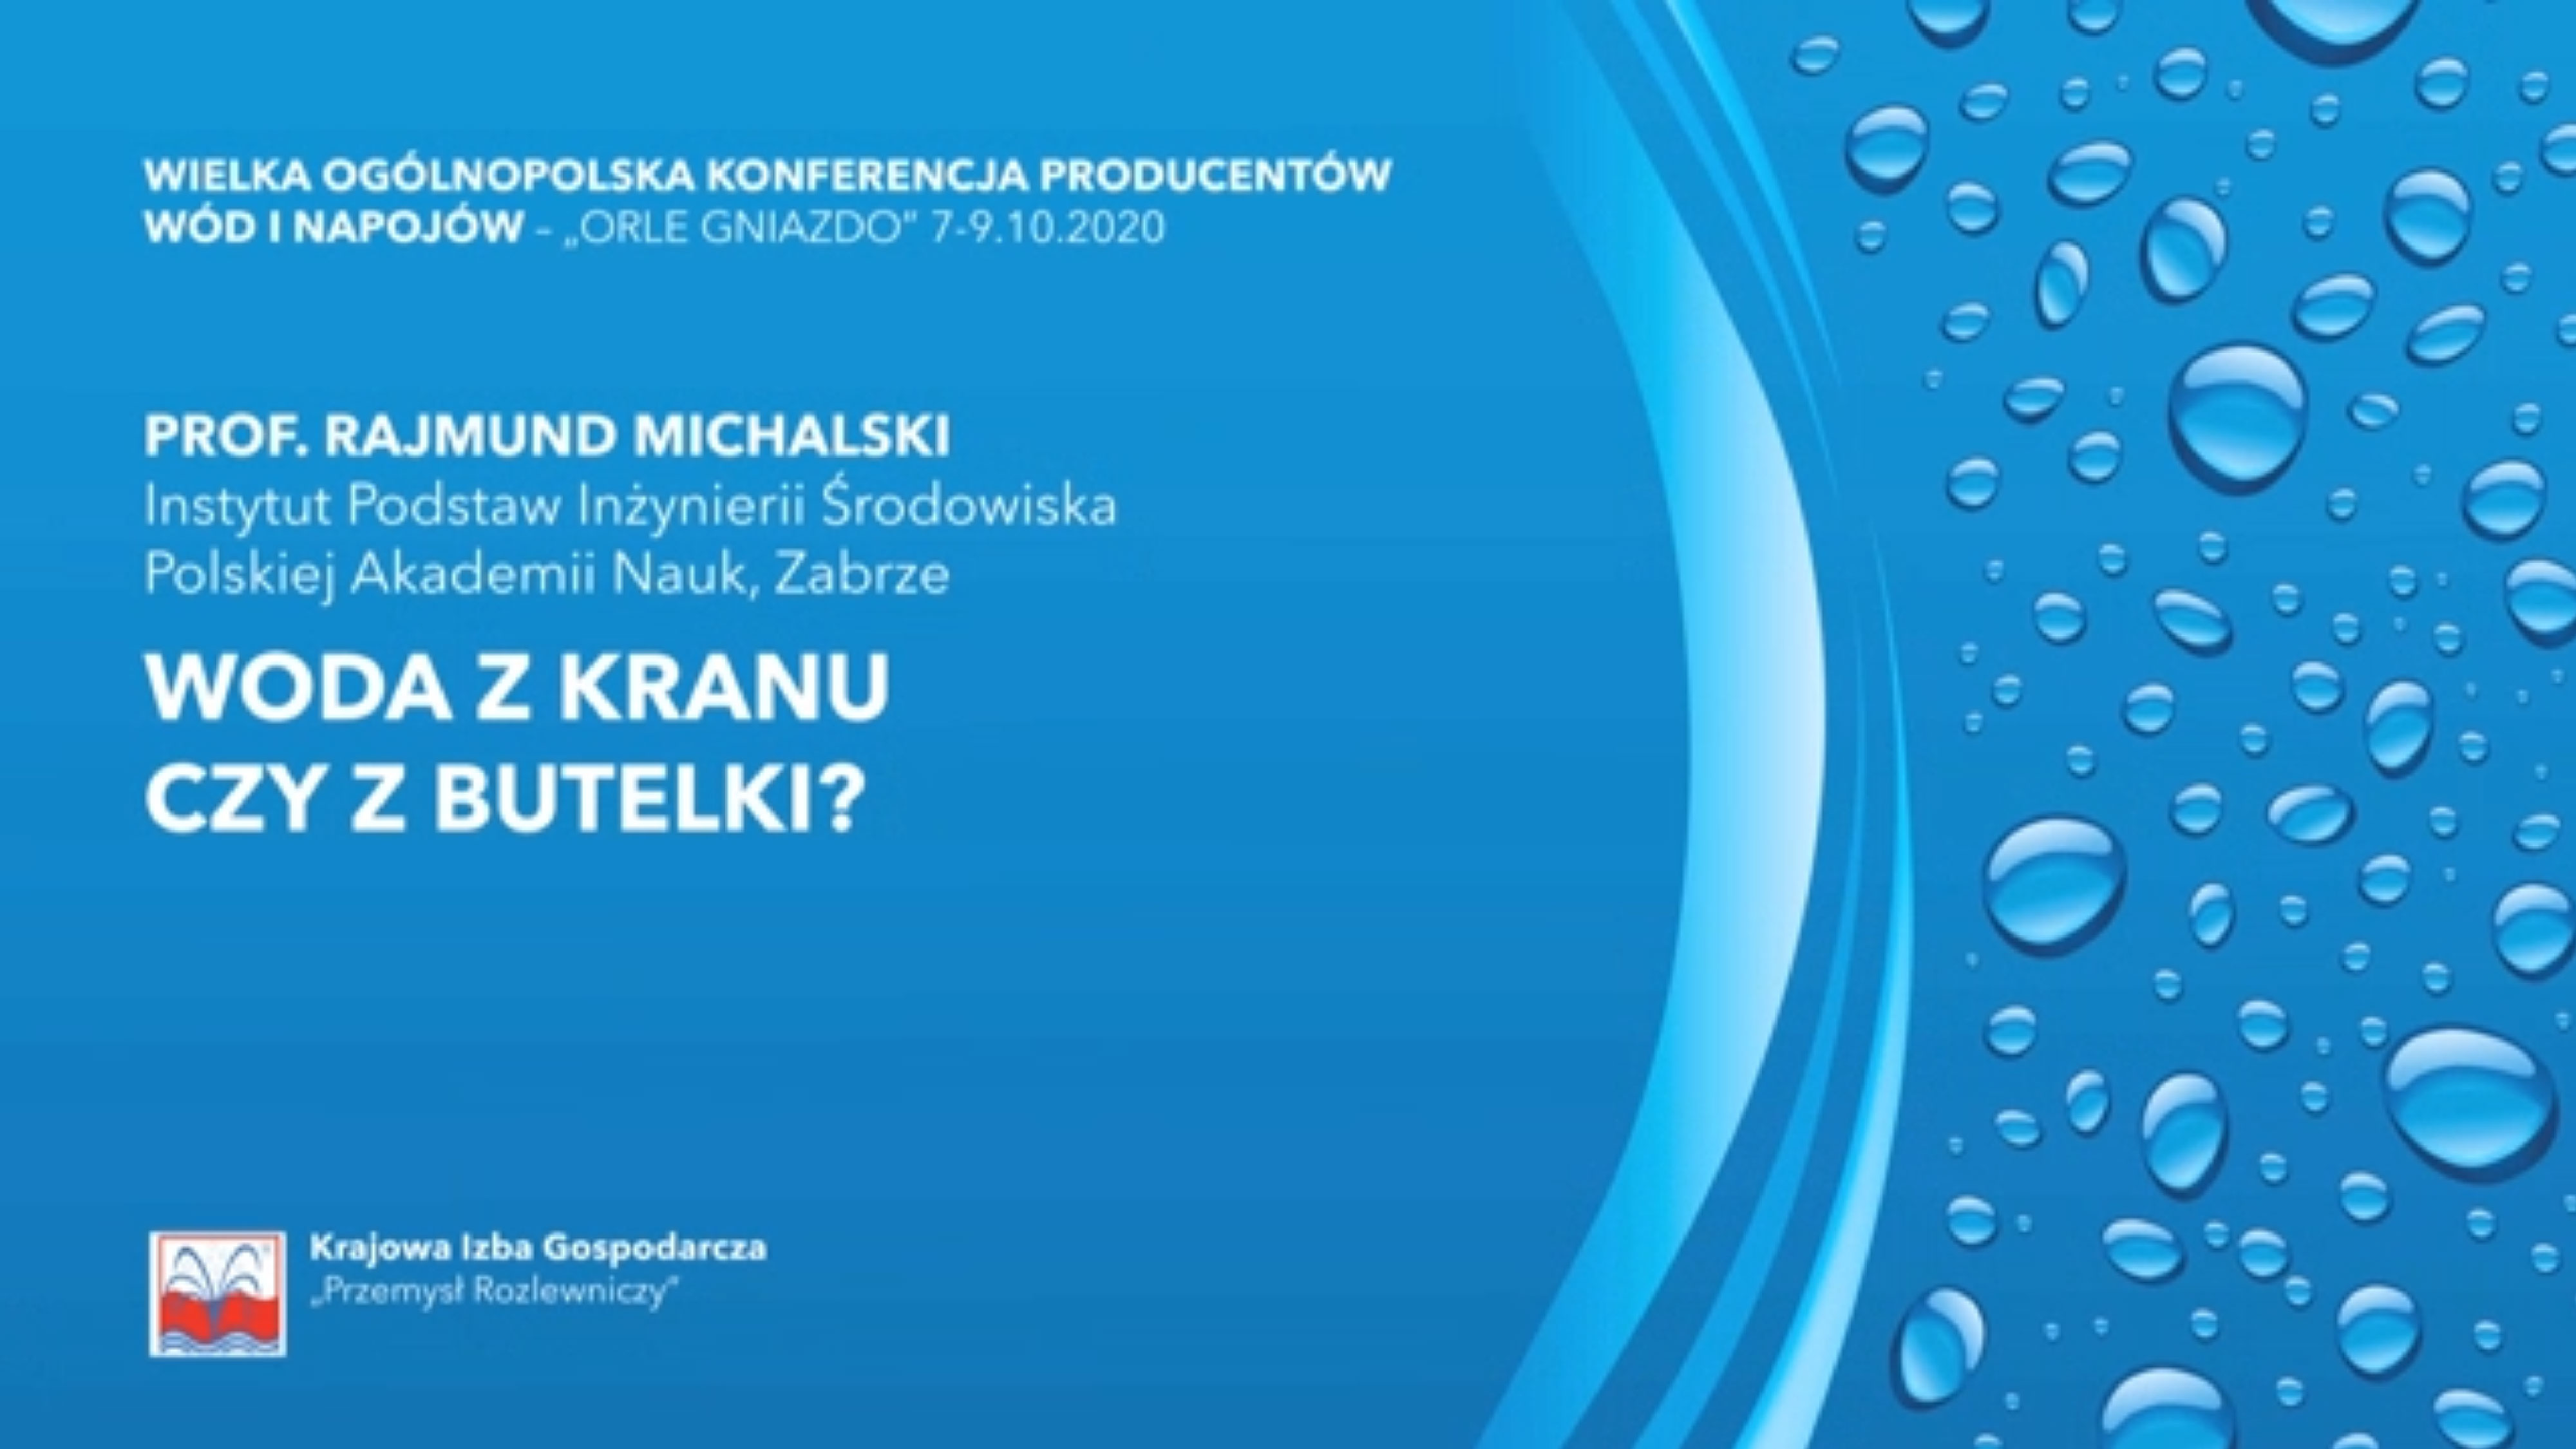 Prof. Rajmund Michalski: “Woda z kranu czy z butelki?”